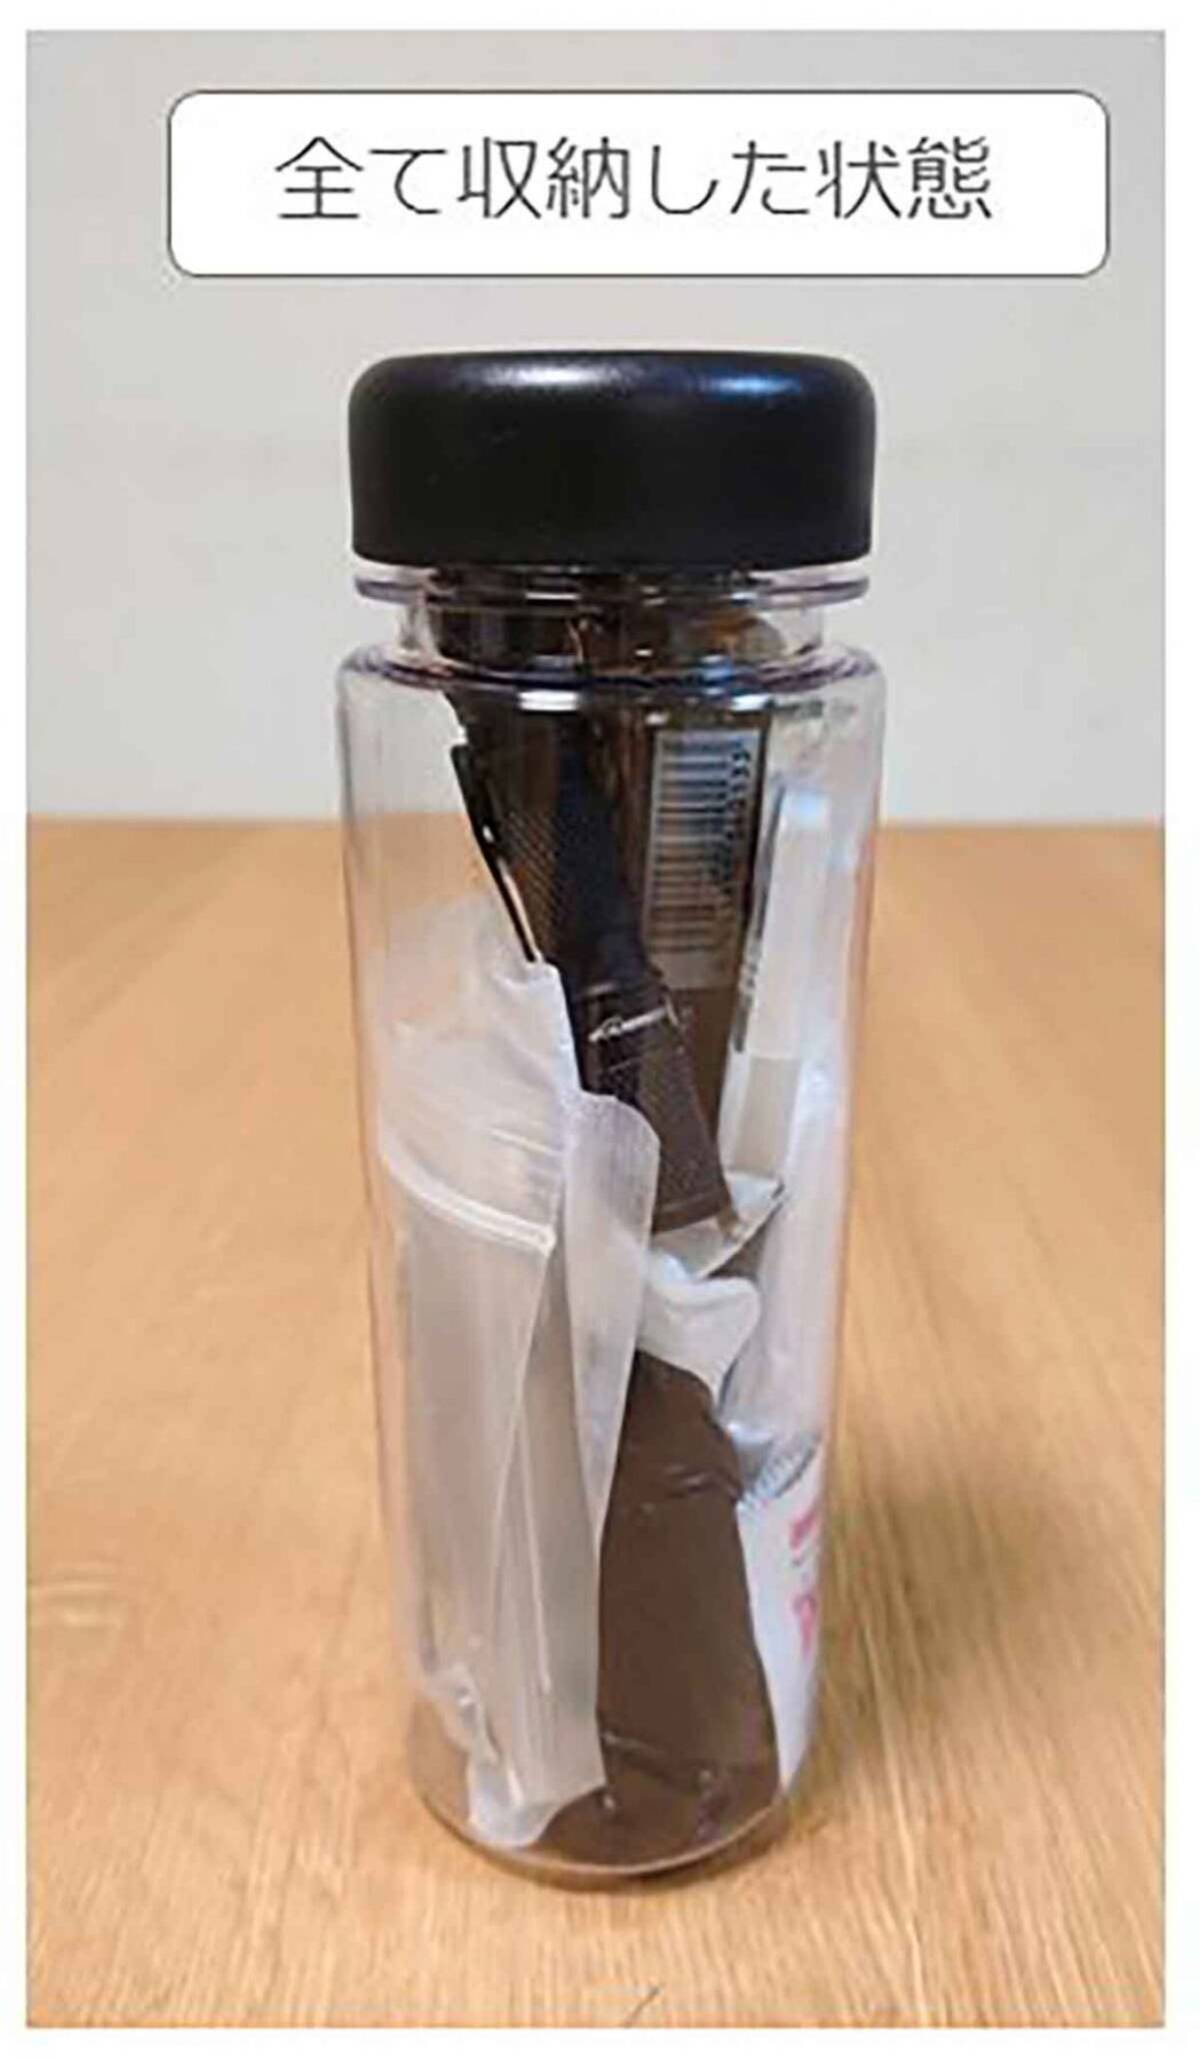 警視庁ツイッターのウォーターボトル1本に収納できる 防災ボトル の作り方が話題 22年4月15日 エキサイトニュース